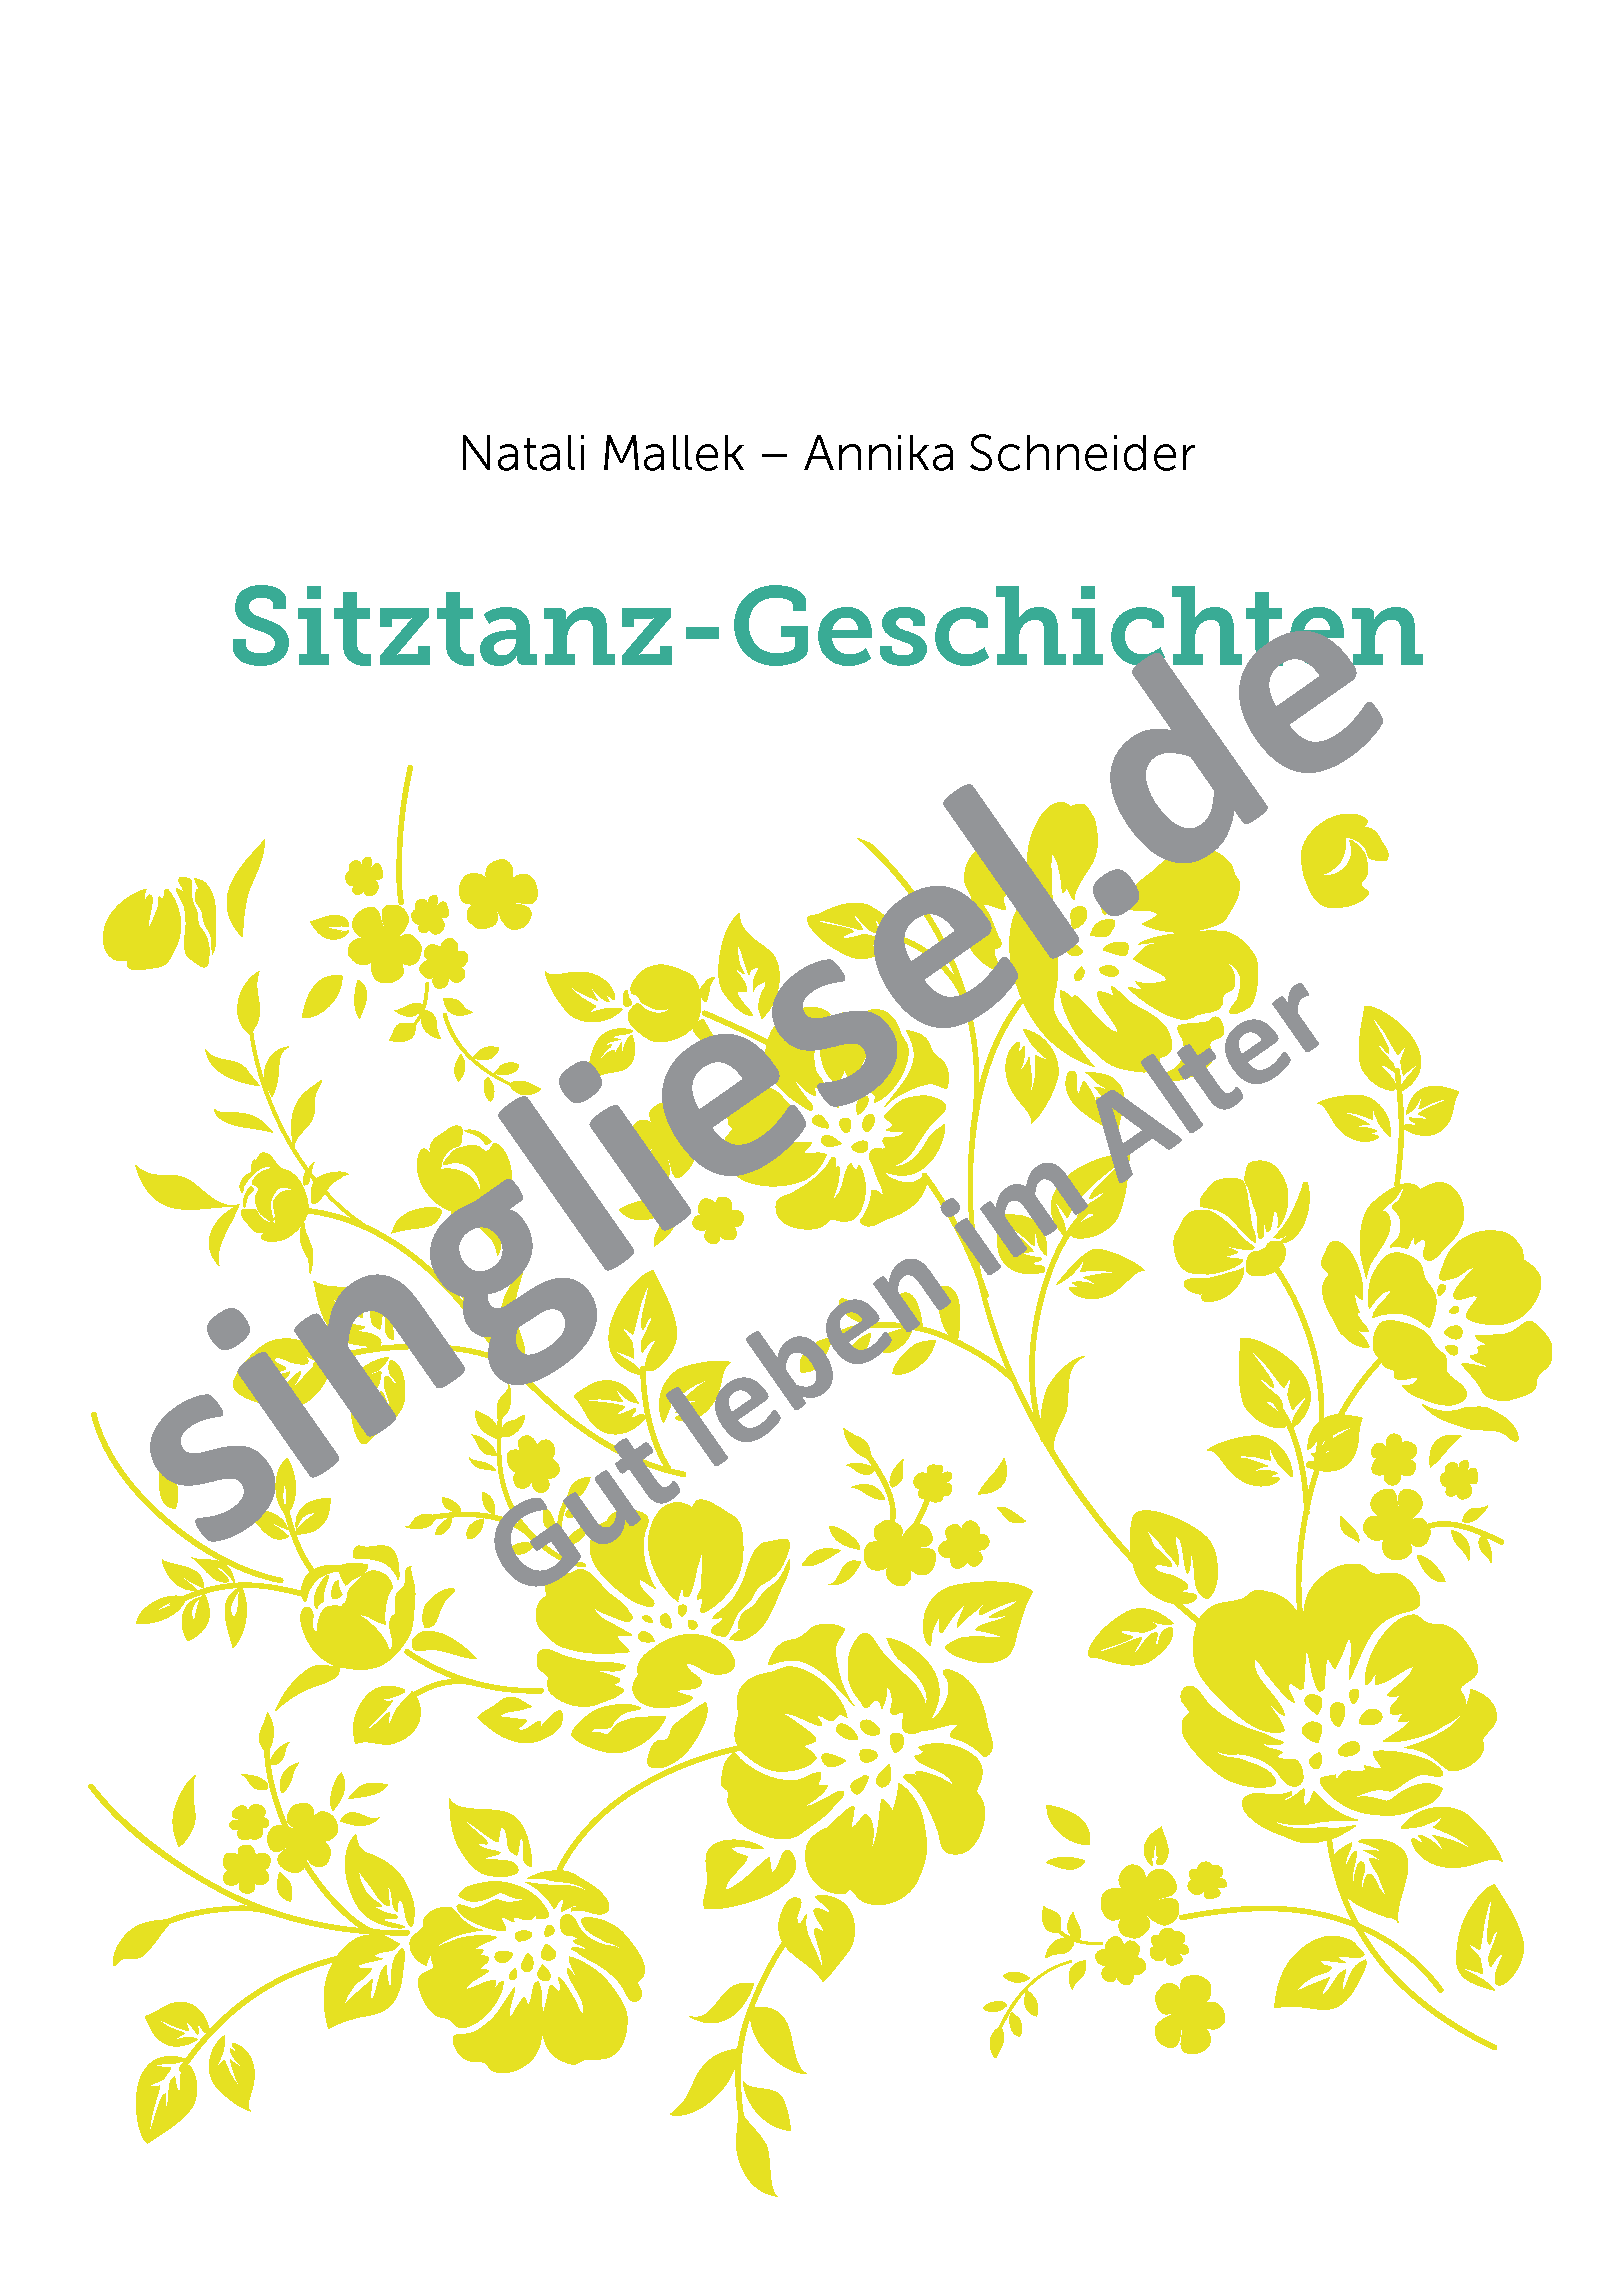 Sitztanz Geschichten für Senioren Mit Noten Band 5 Sofort-Download als PDF Cover Natali Mallek Annika Schneider